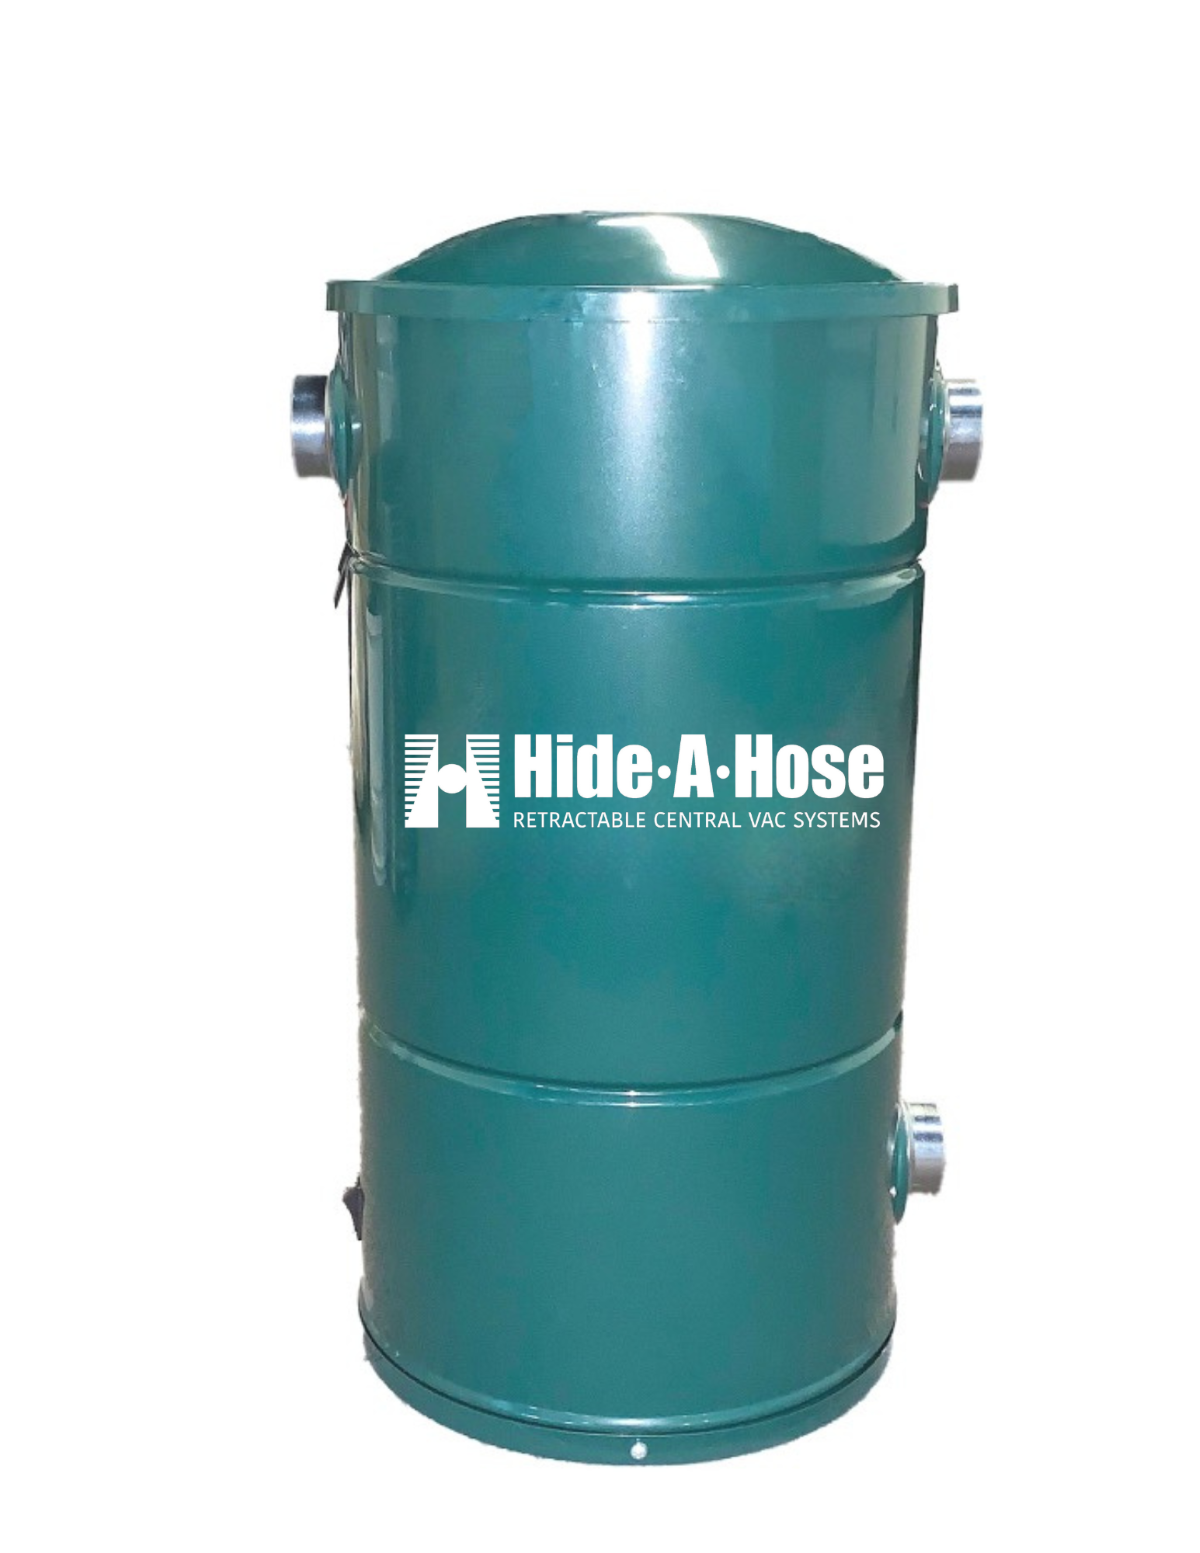 Hide-A-Hose CV300 Power Unit